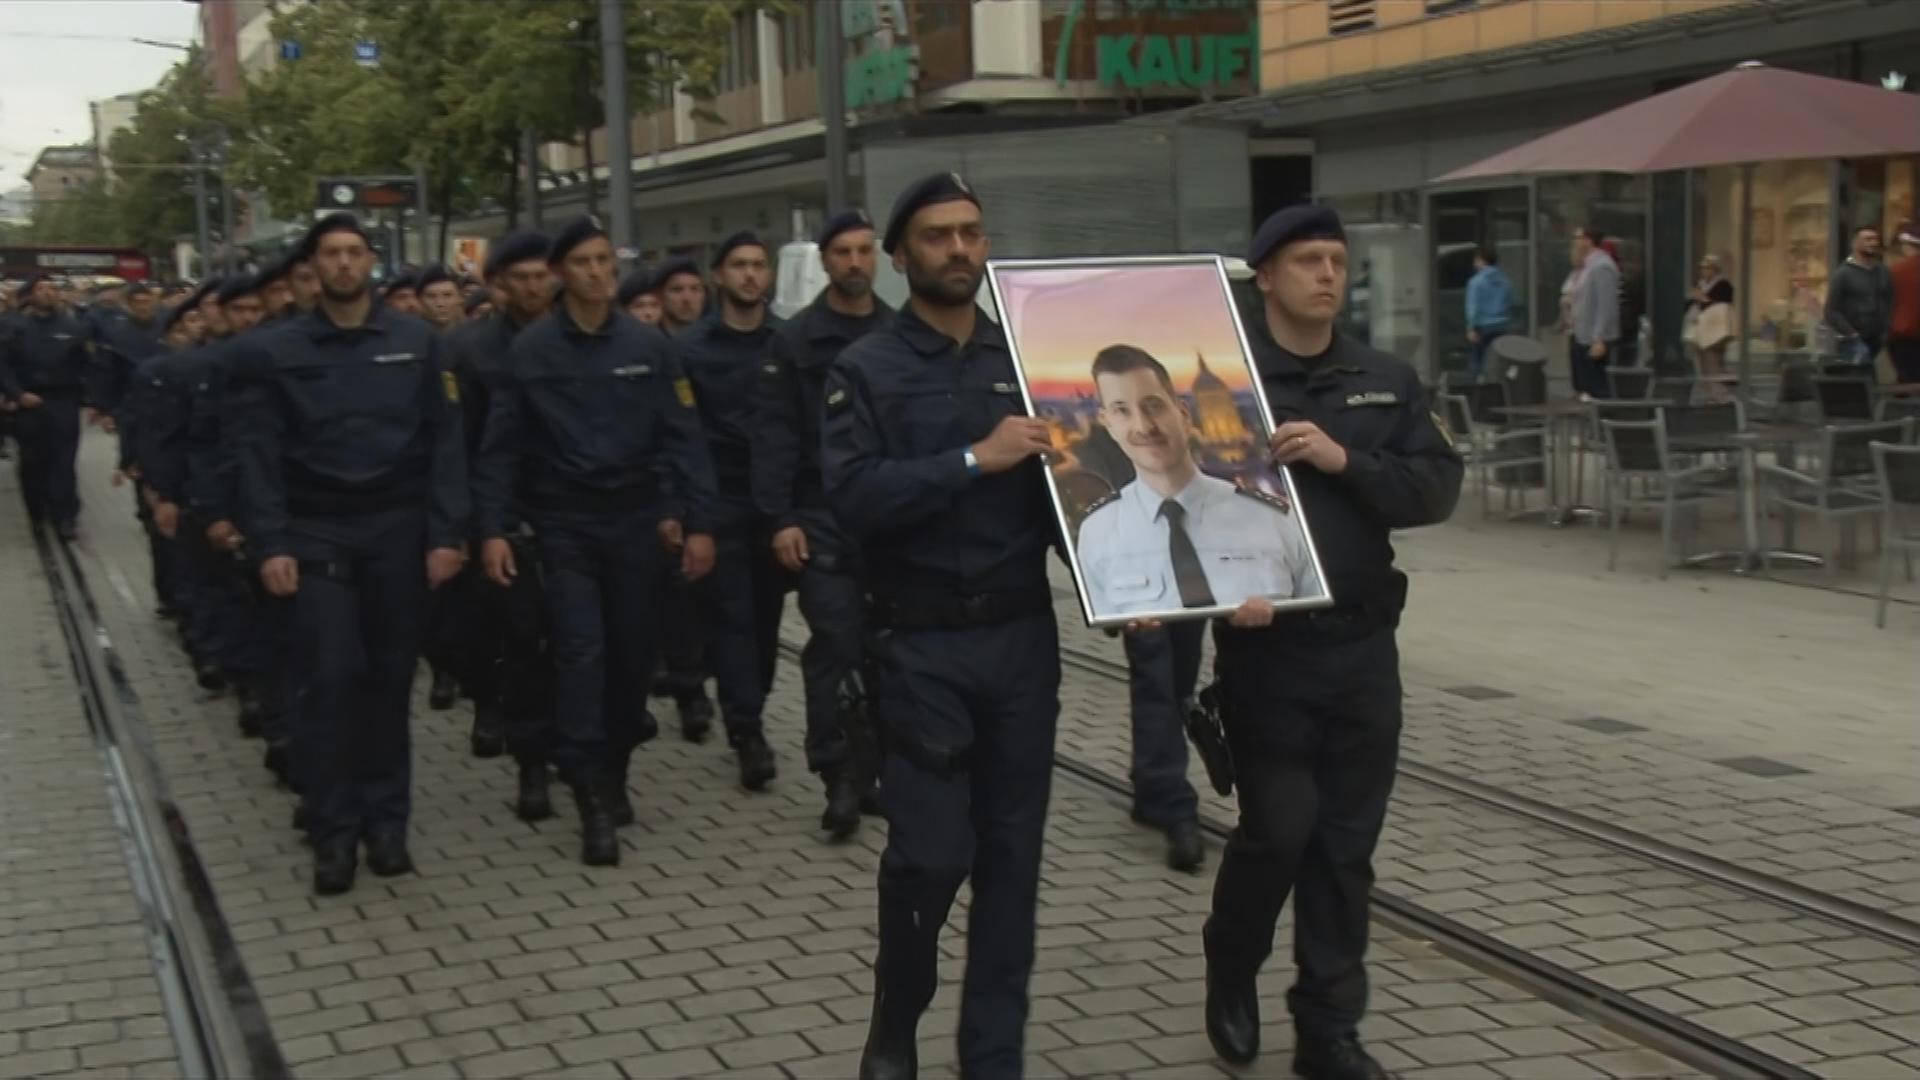 Trauermarsch in Mannheim für getöteten Polizisten